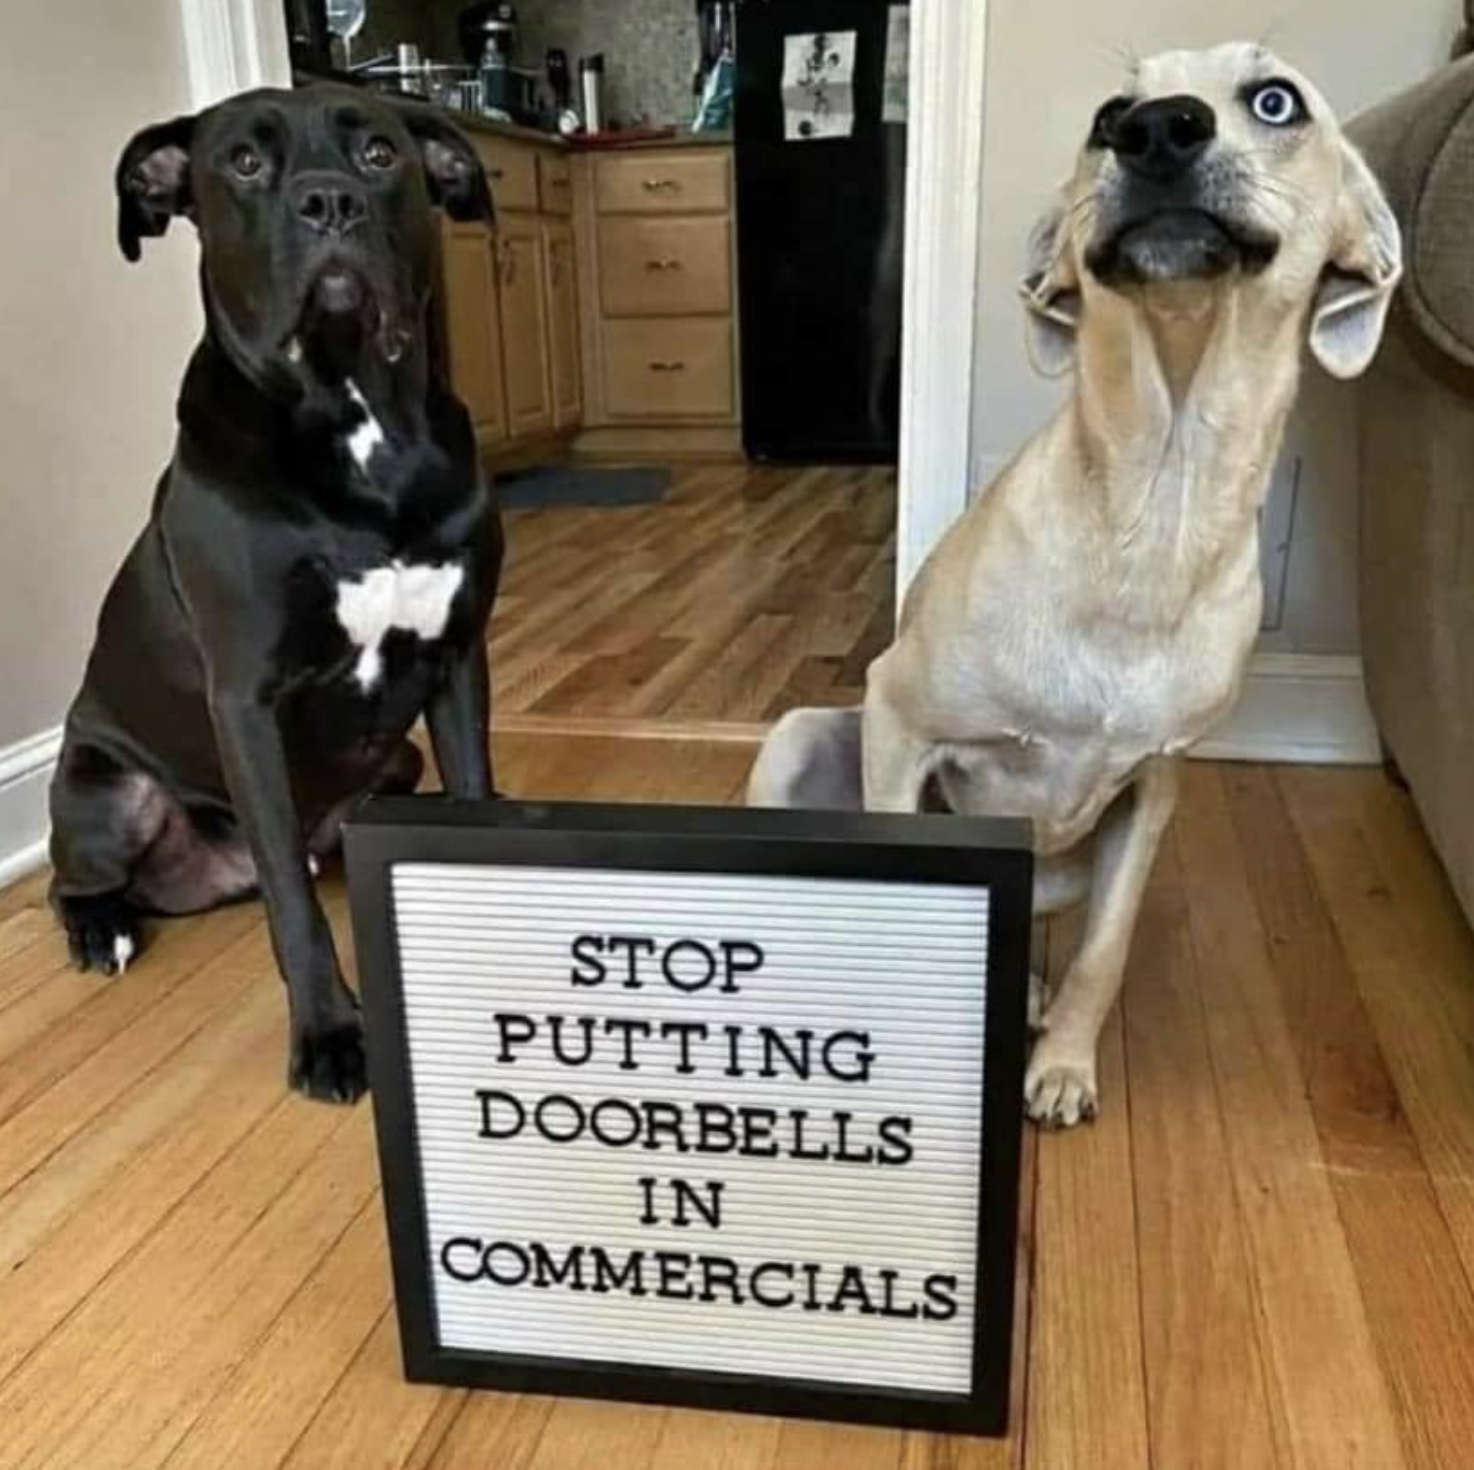 &quot;Stop putting doorbells in commercials&quot;